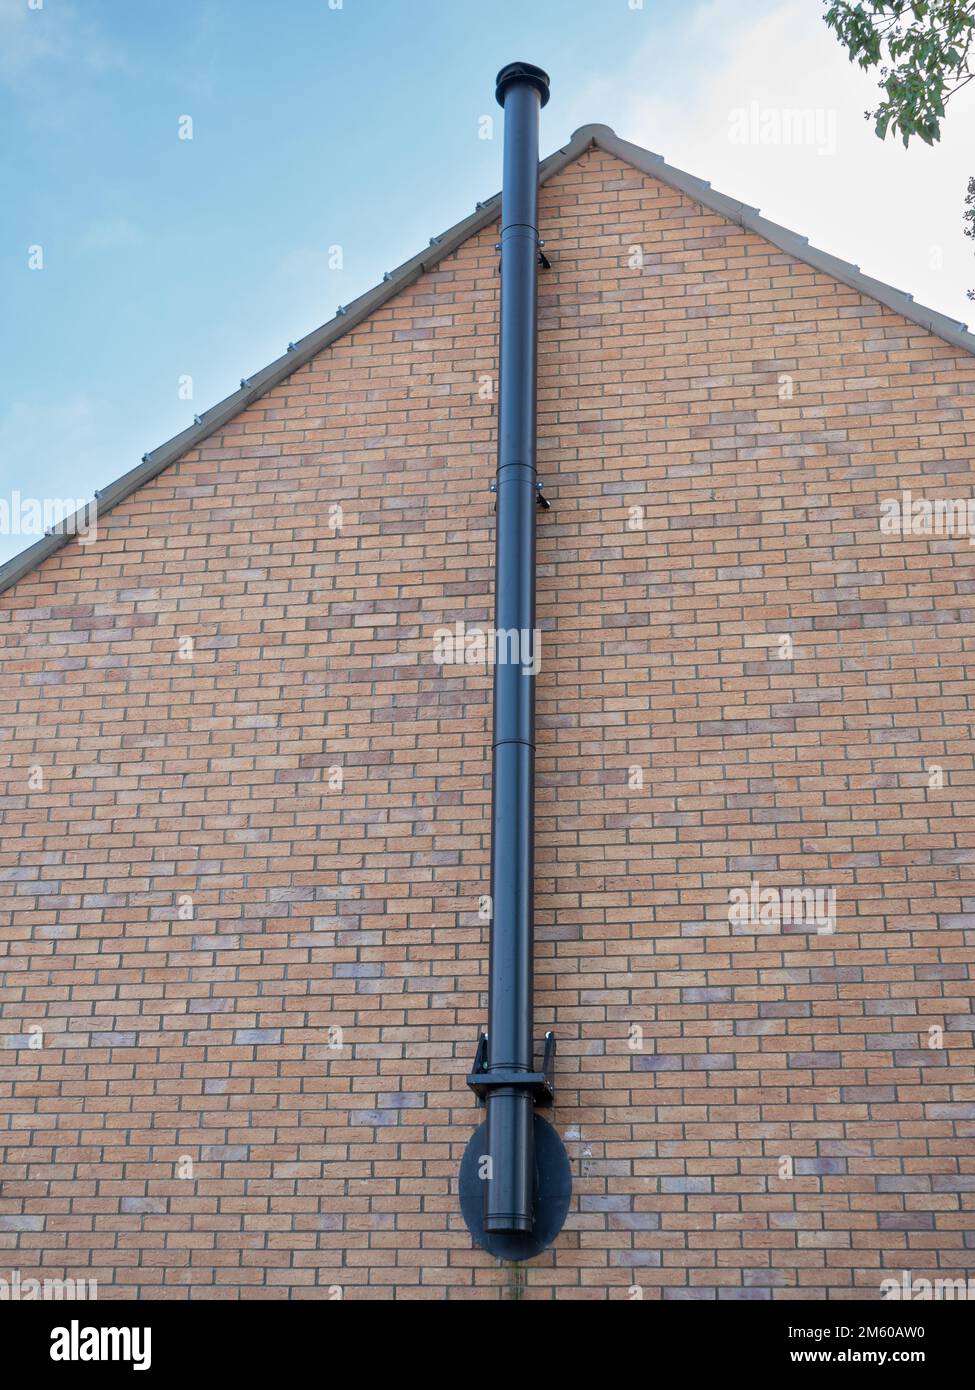 Un conduit de fumée externe a été ajouté à l'extérieur de la maison dans le Wiltshire, en Angleterre, au Royaume-Uni. Banque D'Images